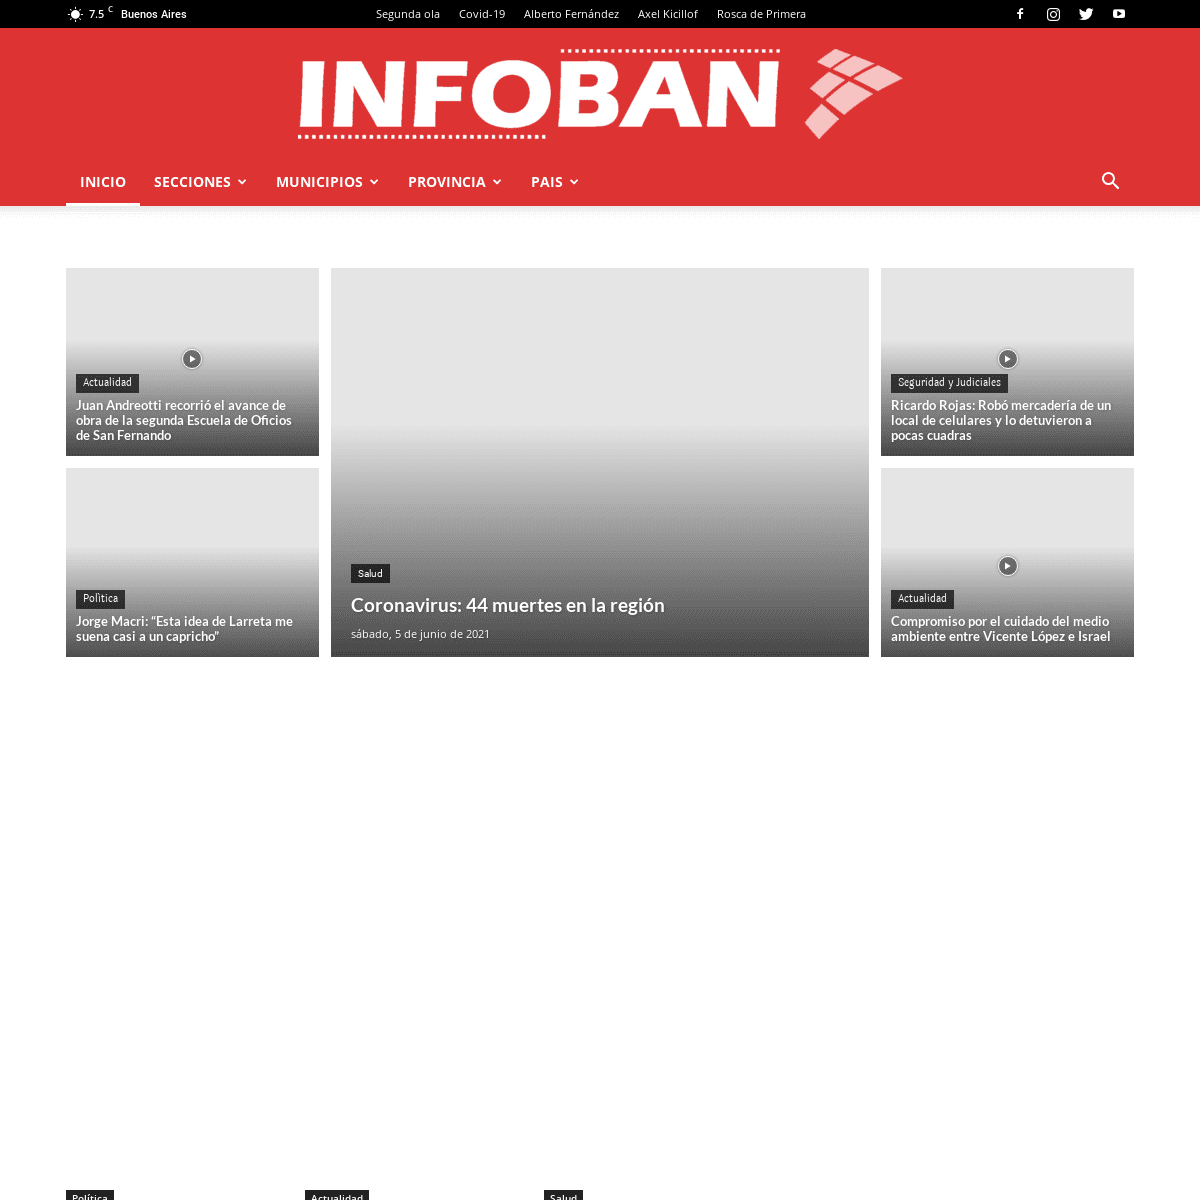 A complete backup of https://infoban.com.ar